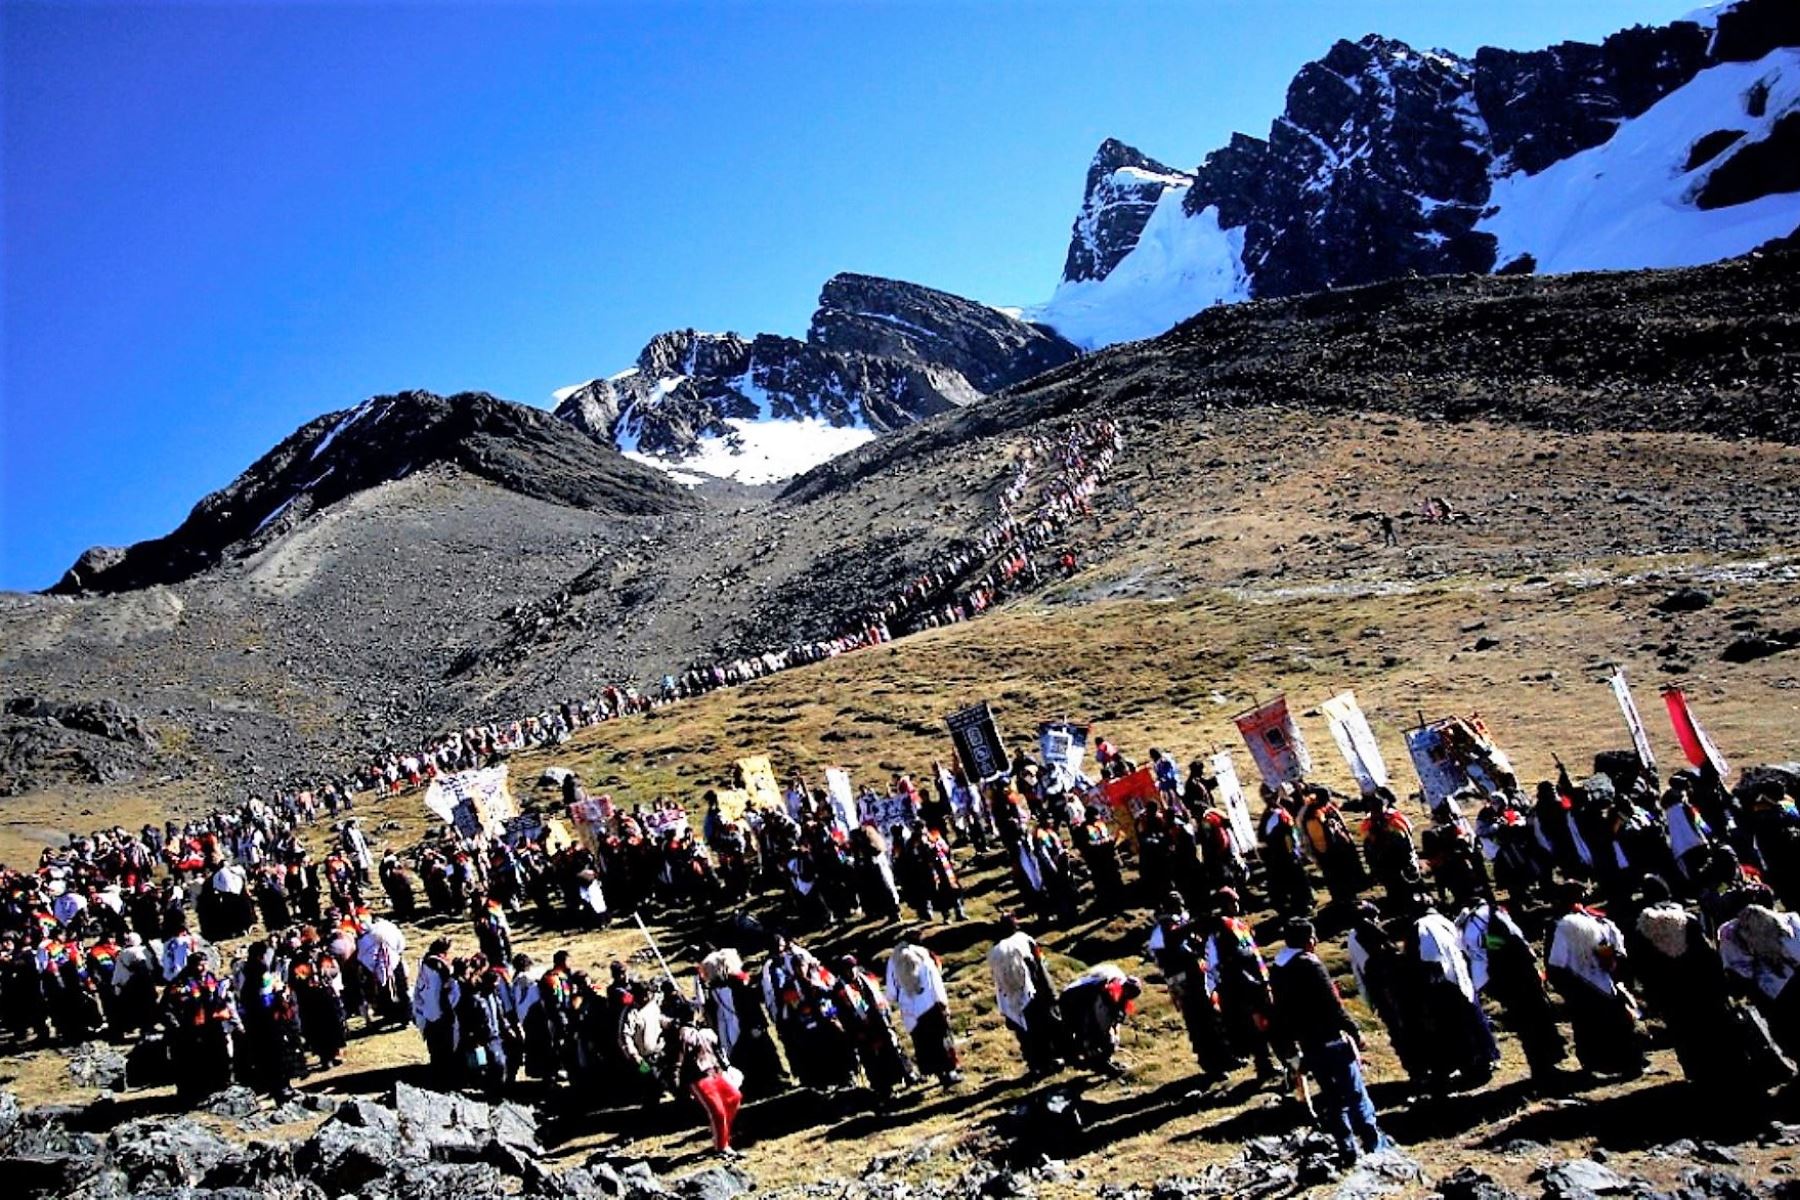 Policía Nacional garantiza seguridad de peregrinos y turistas que viajen al Santuario del Señor de Qoyllur Riti, en Cusco. ANDINA/Percy Hurtado Santillán